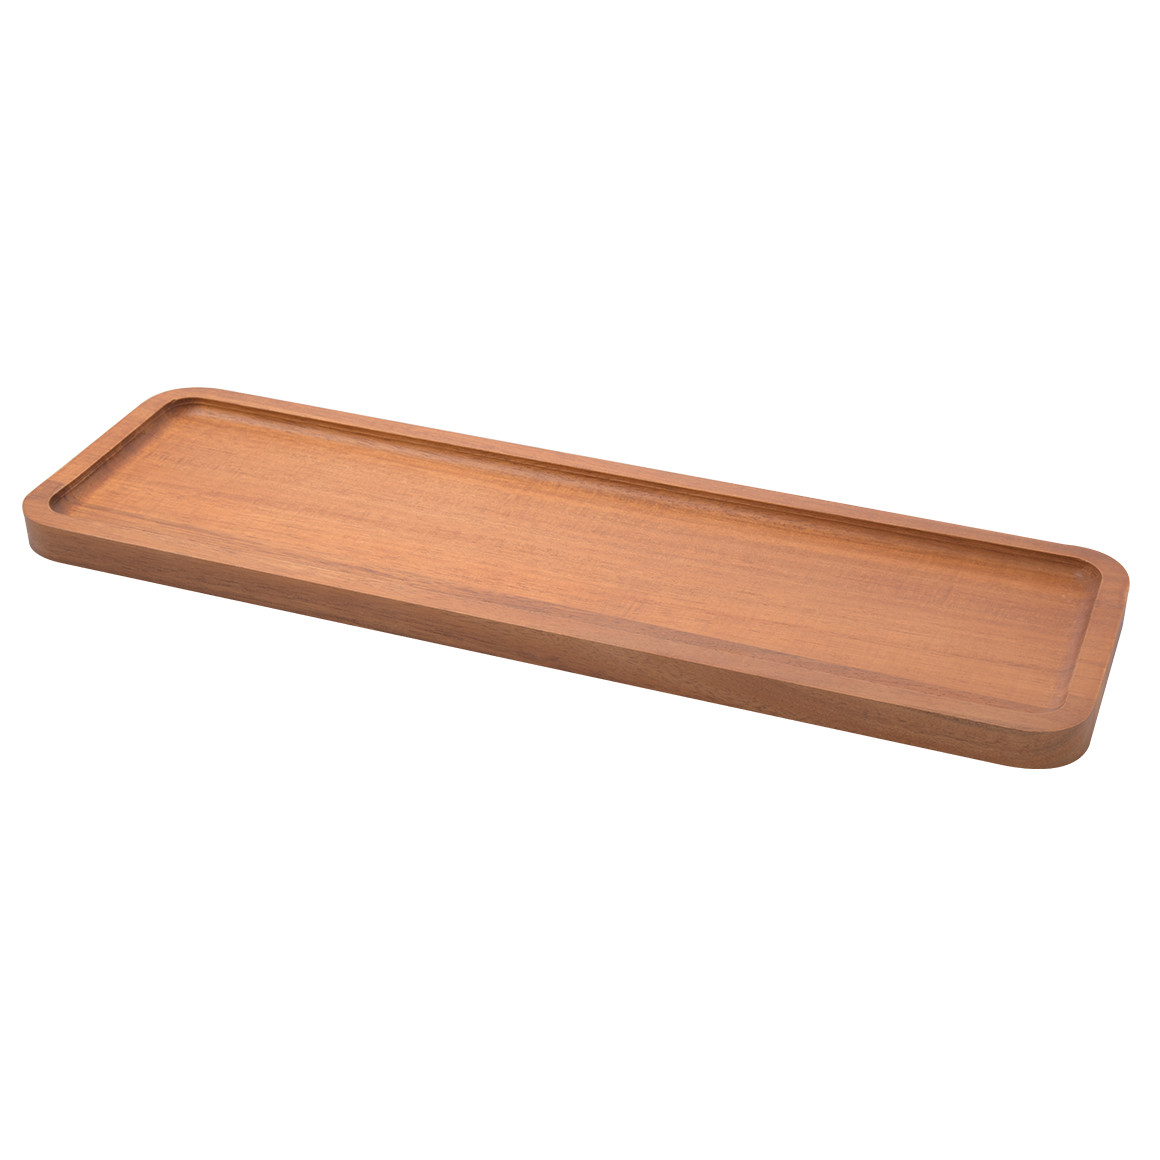 Längliches Deko-Tablett aus Holz von My Home